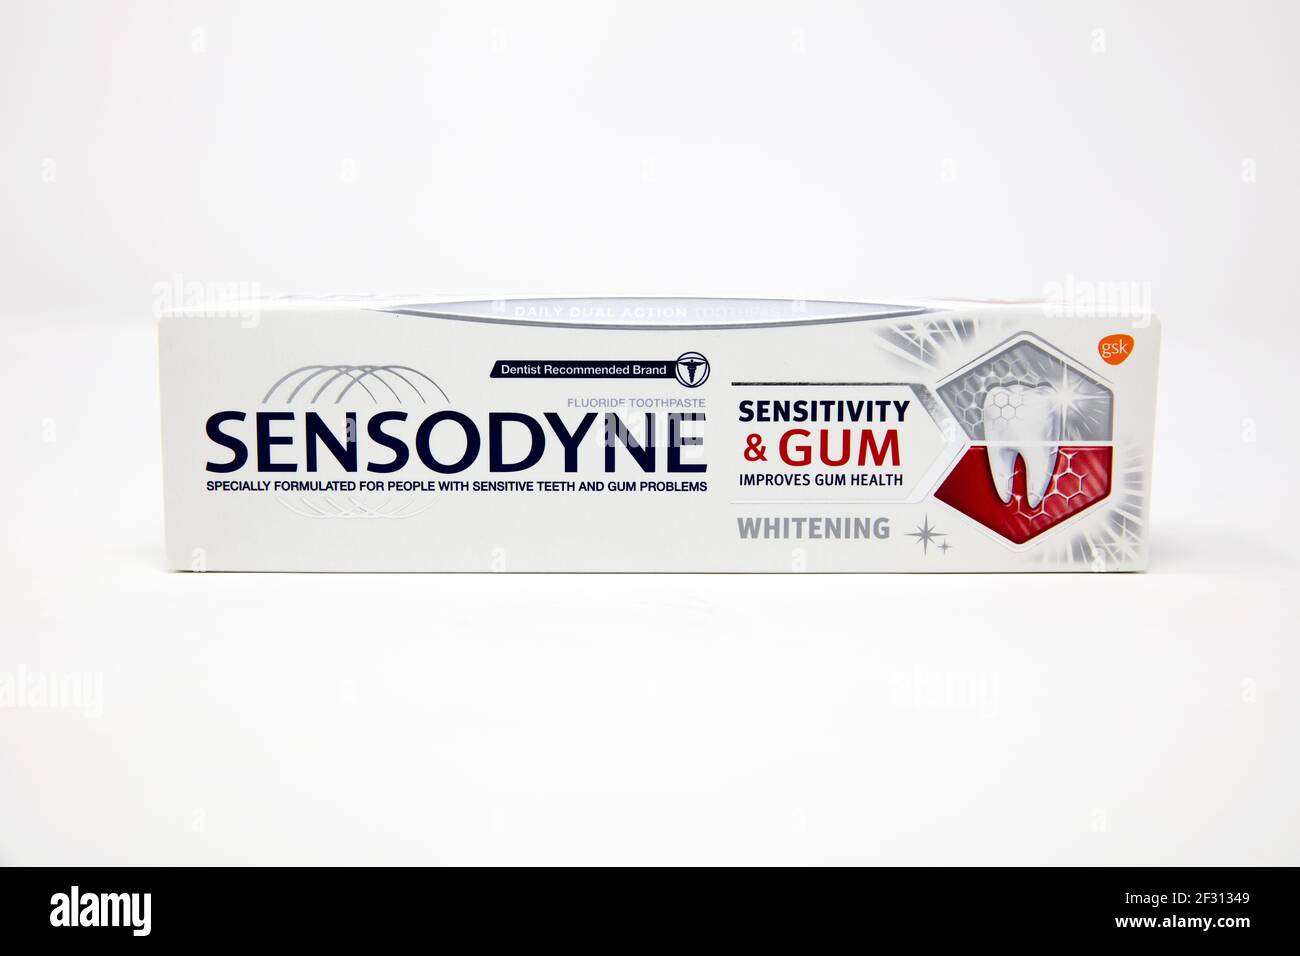 Sensodyne Sensitivity & Gum Whitening Toothpaste Stock Photo - Alamy